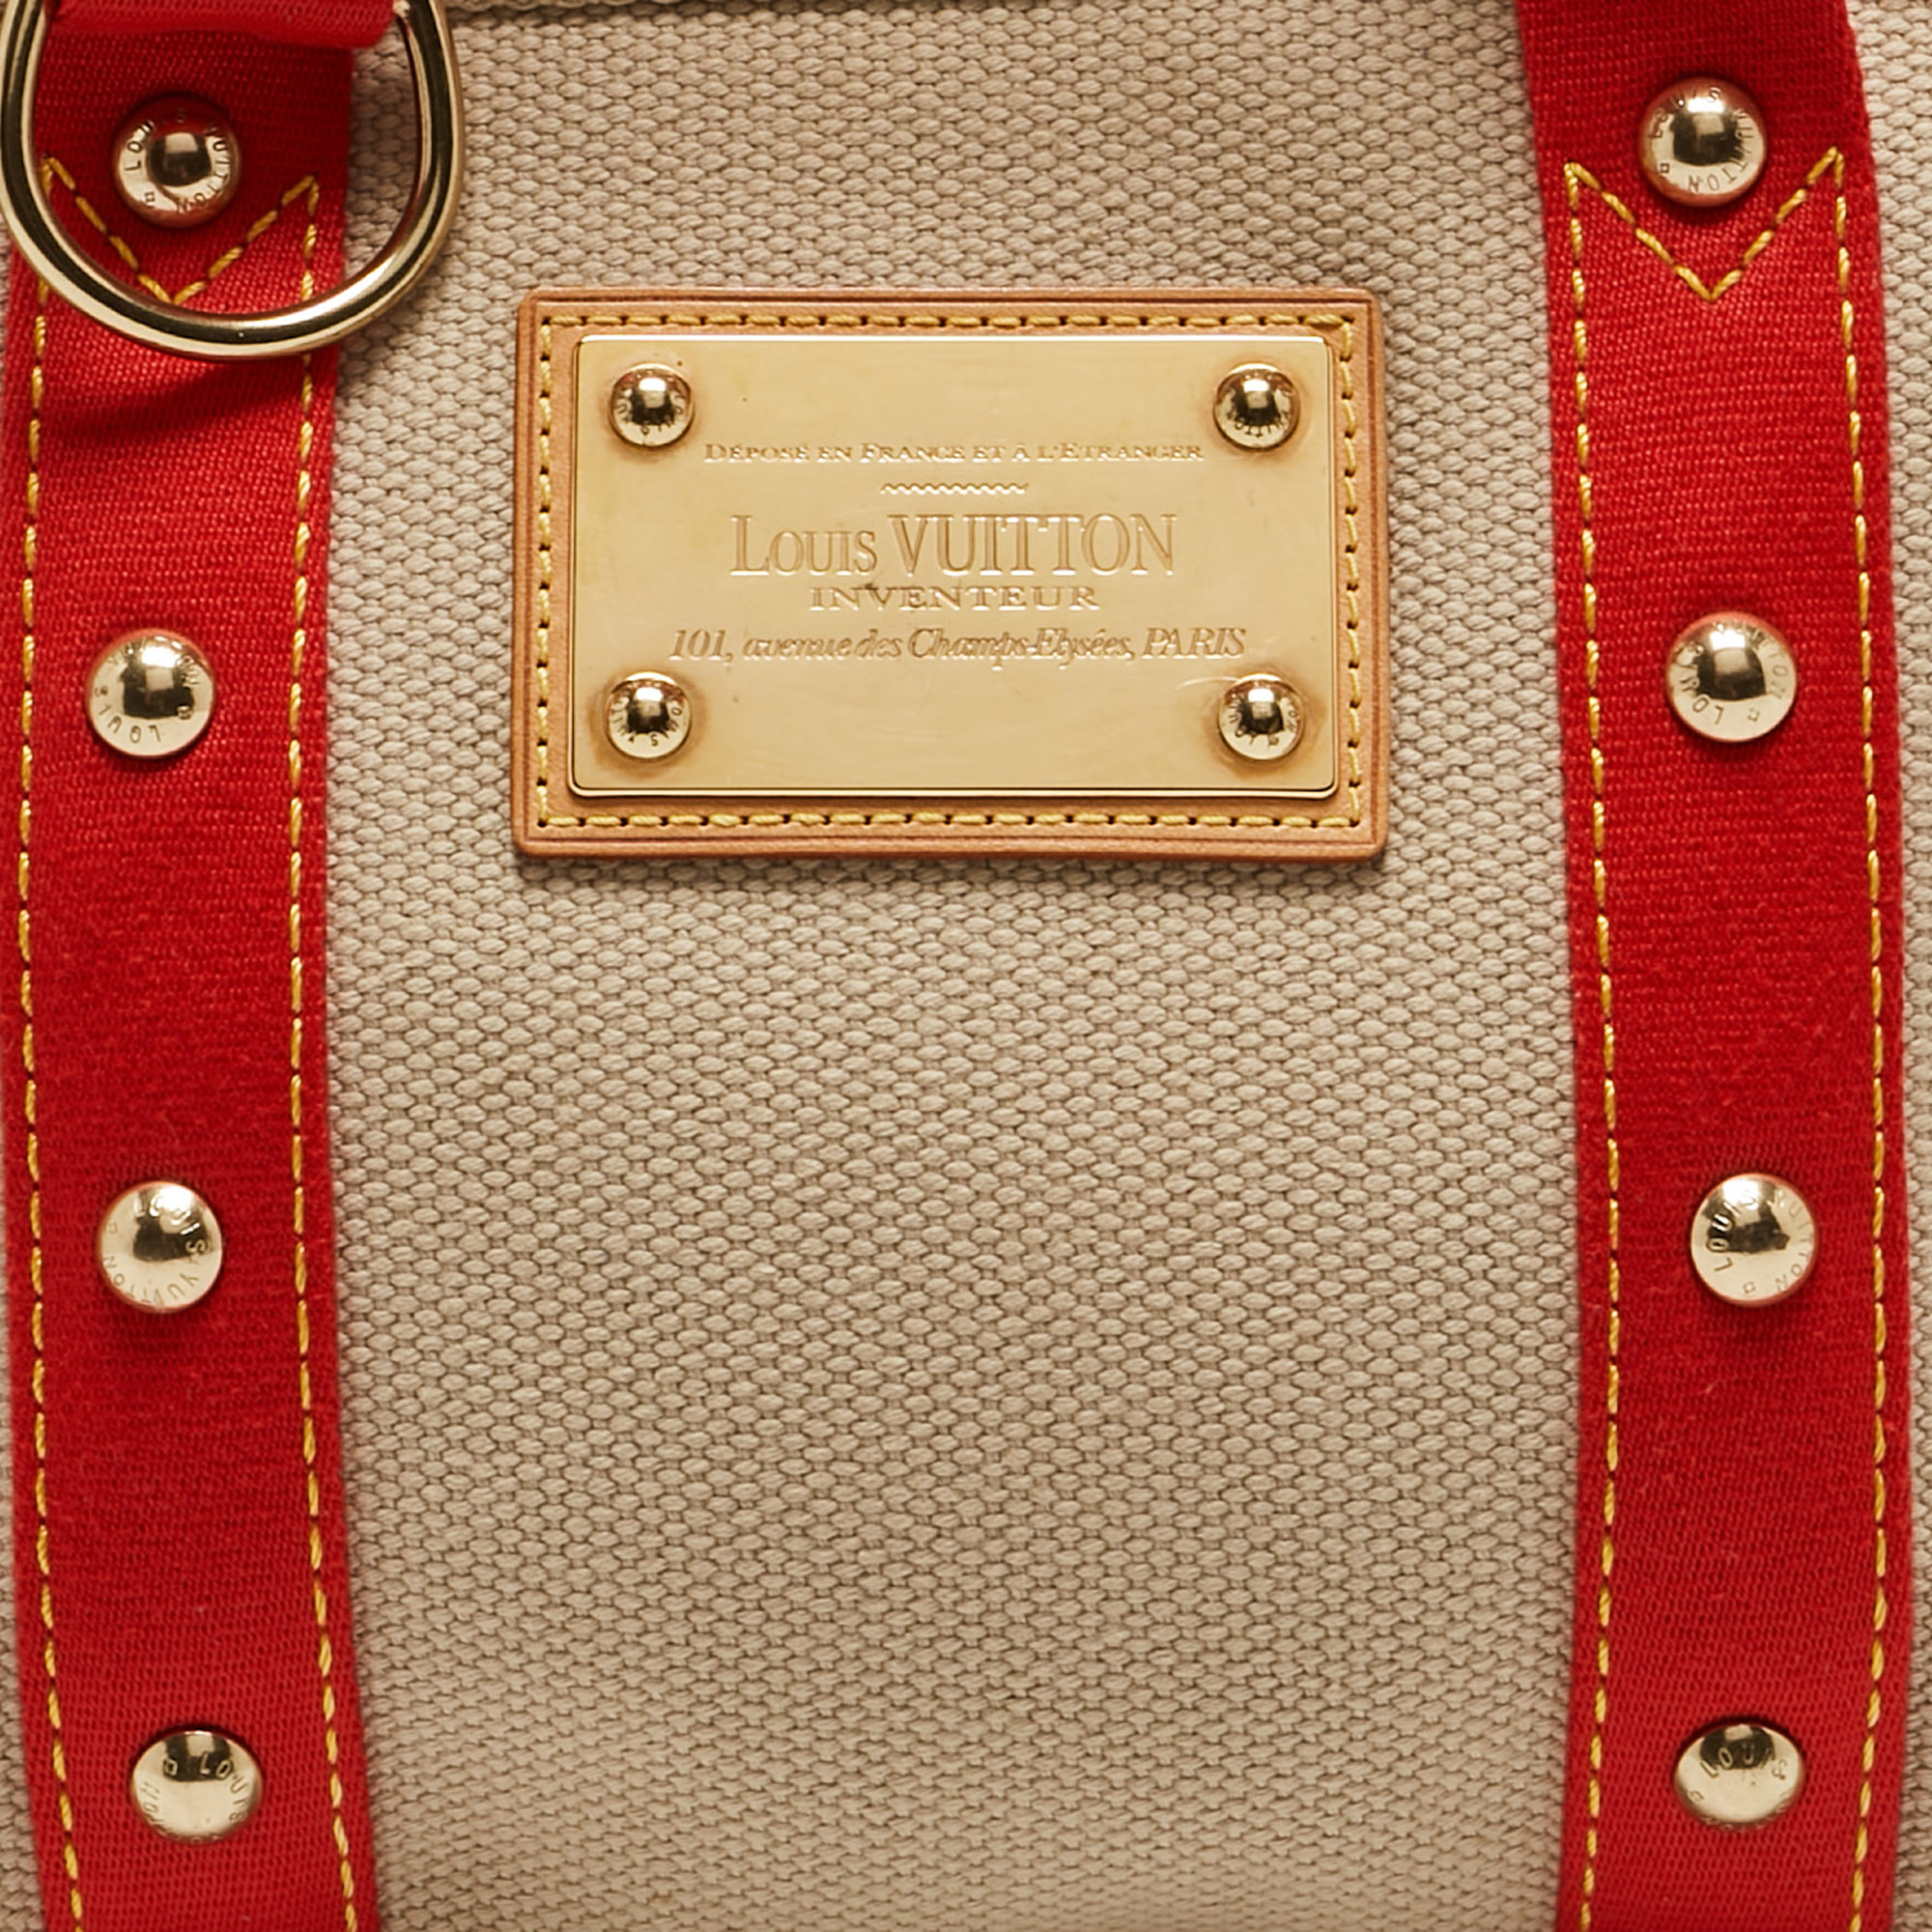 Louis Vuitton Beige/Red Canvas Antigua Cabas PM Bag